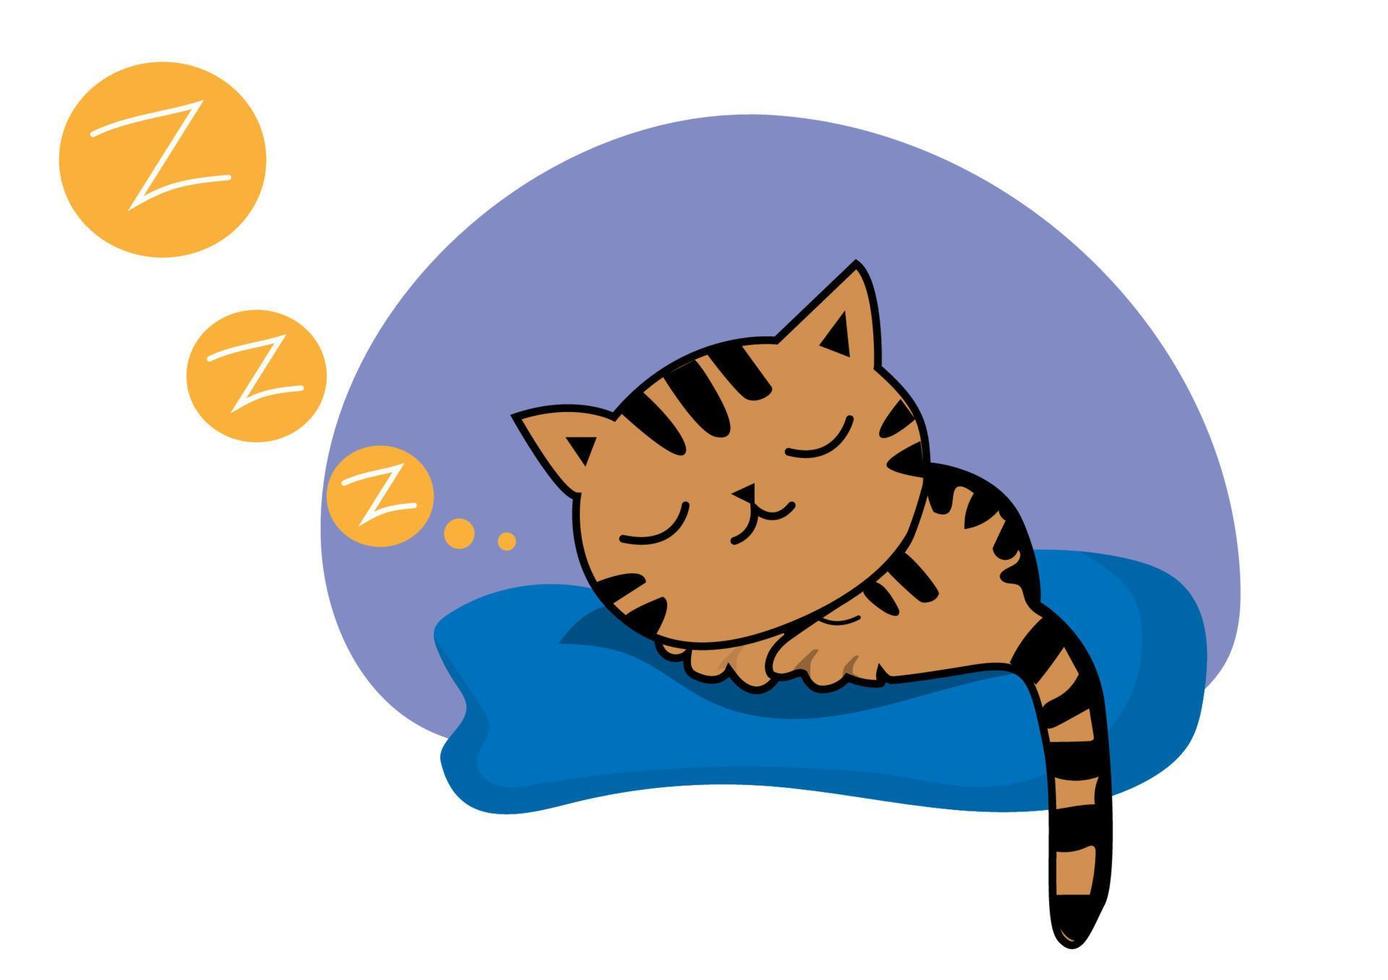 schwarzbraun gestreifte Fettkatze schläft fest auf einer blauen Matratze. vektorisoliertes Design für Online-Kommunikation in sozialen Netzwerken vektor